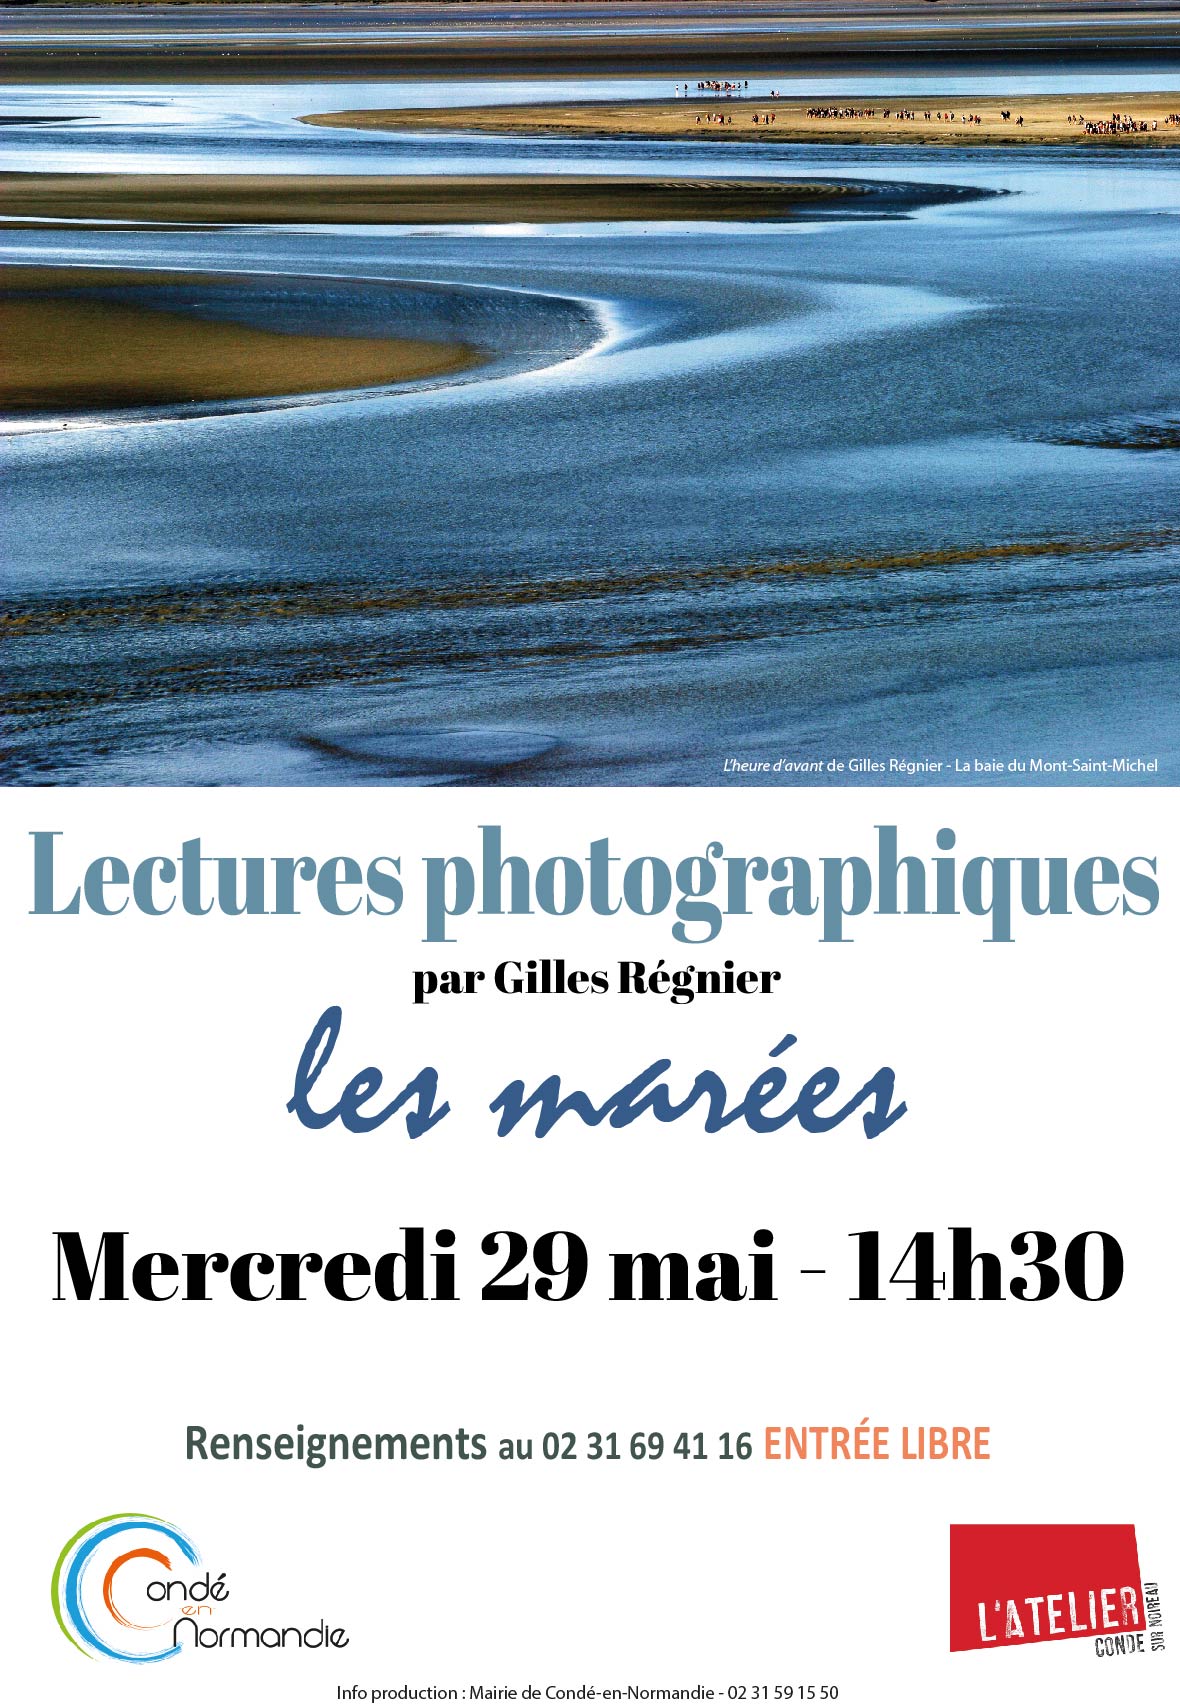 Lecture photographique Gilles Régnier A4